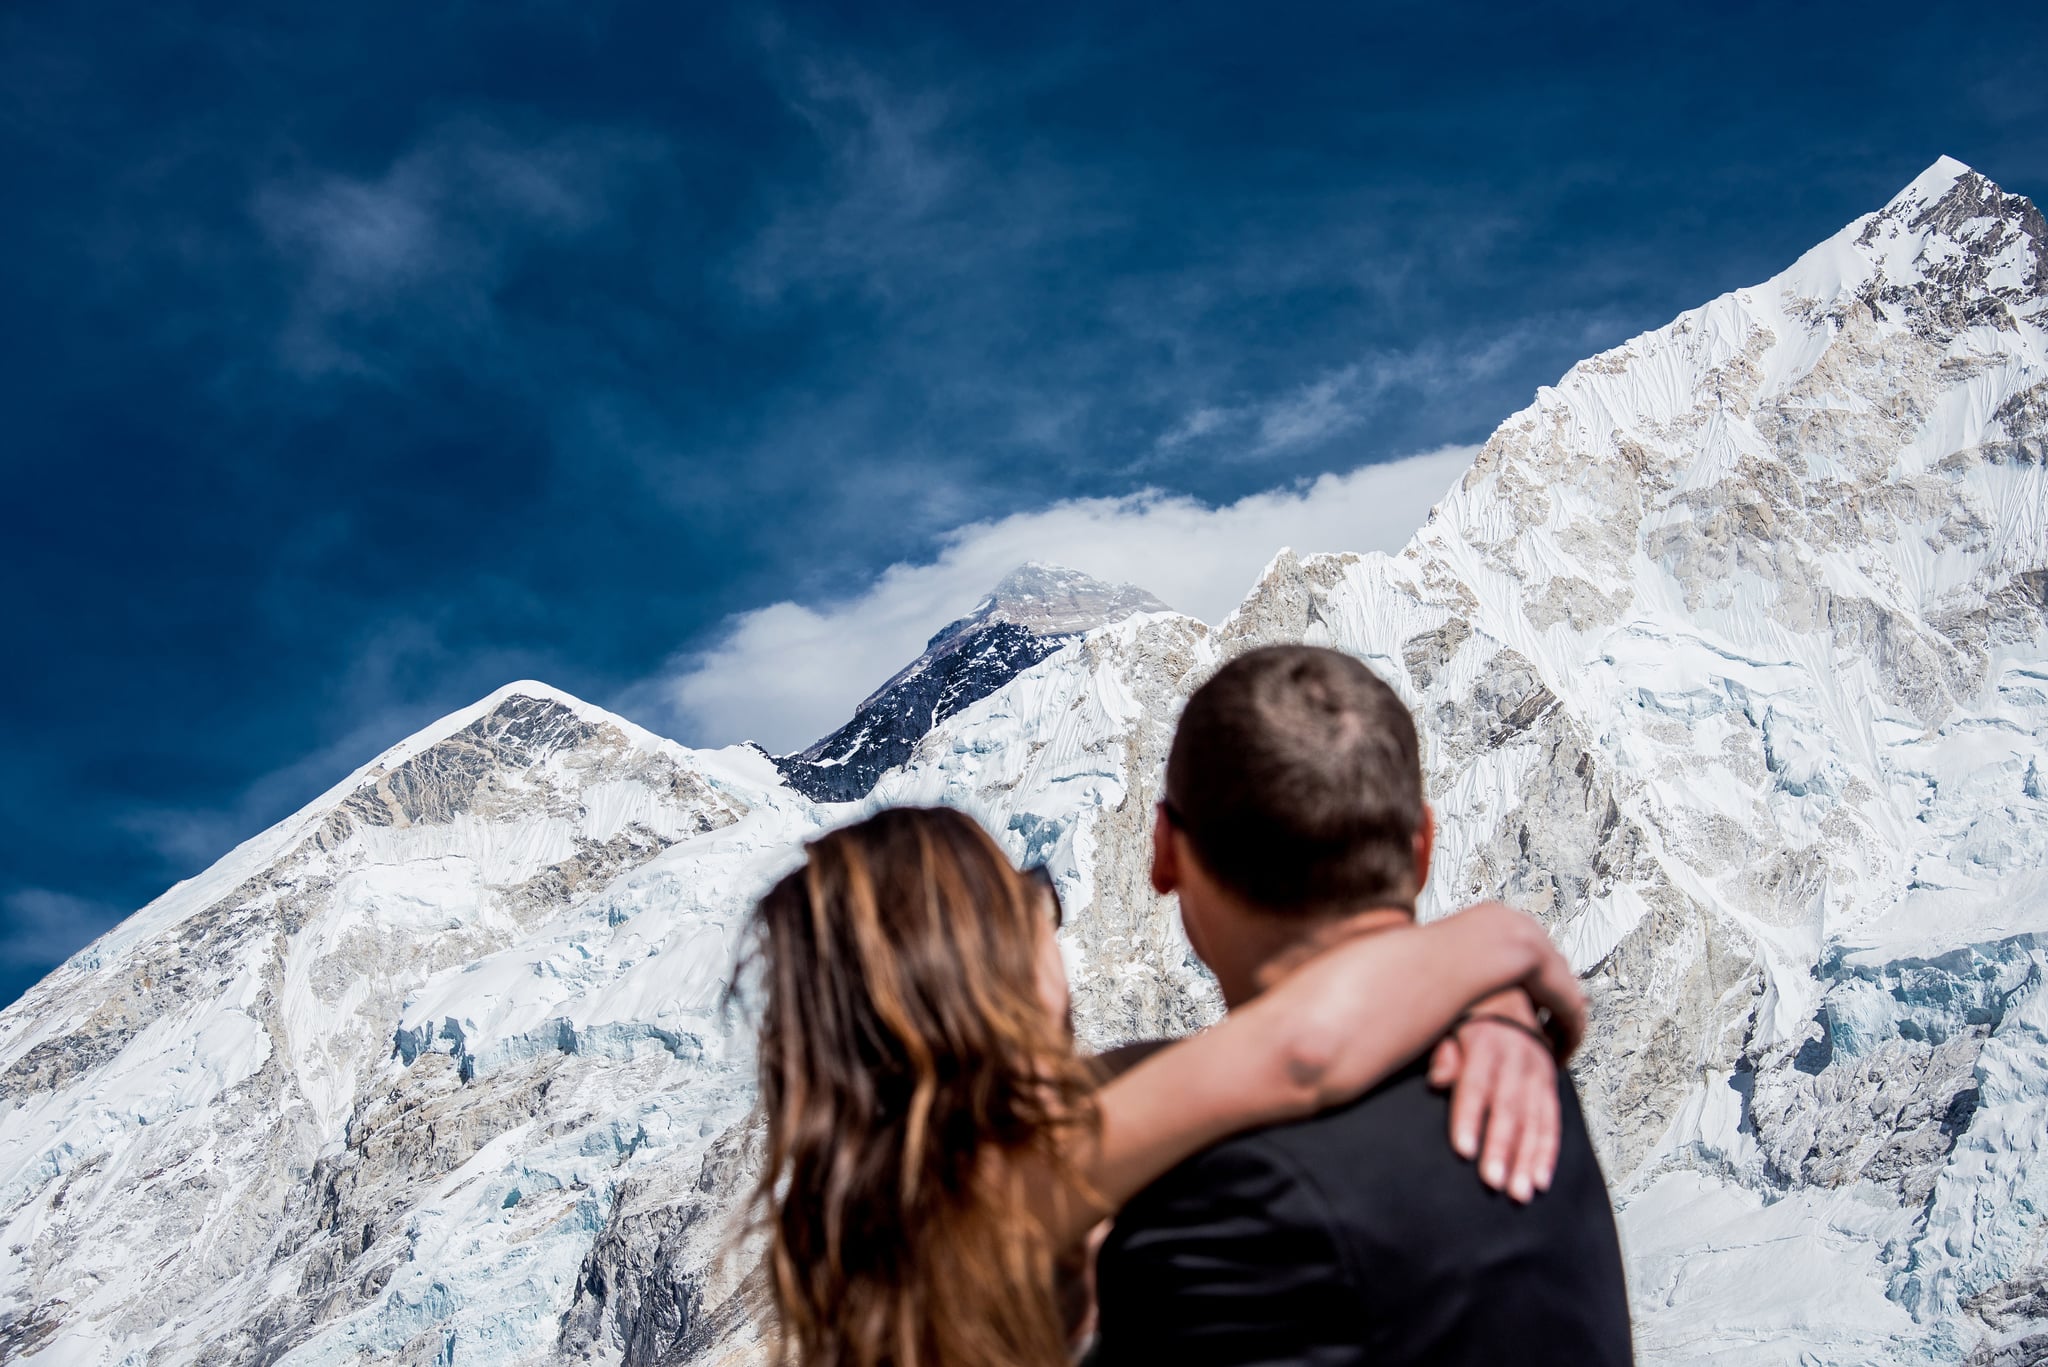 Обнимая горы. Свадьба в горах. Влюбленные в горах. Пара в горах. Влюбленная пара в горах.